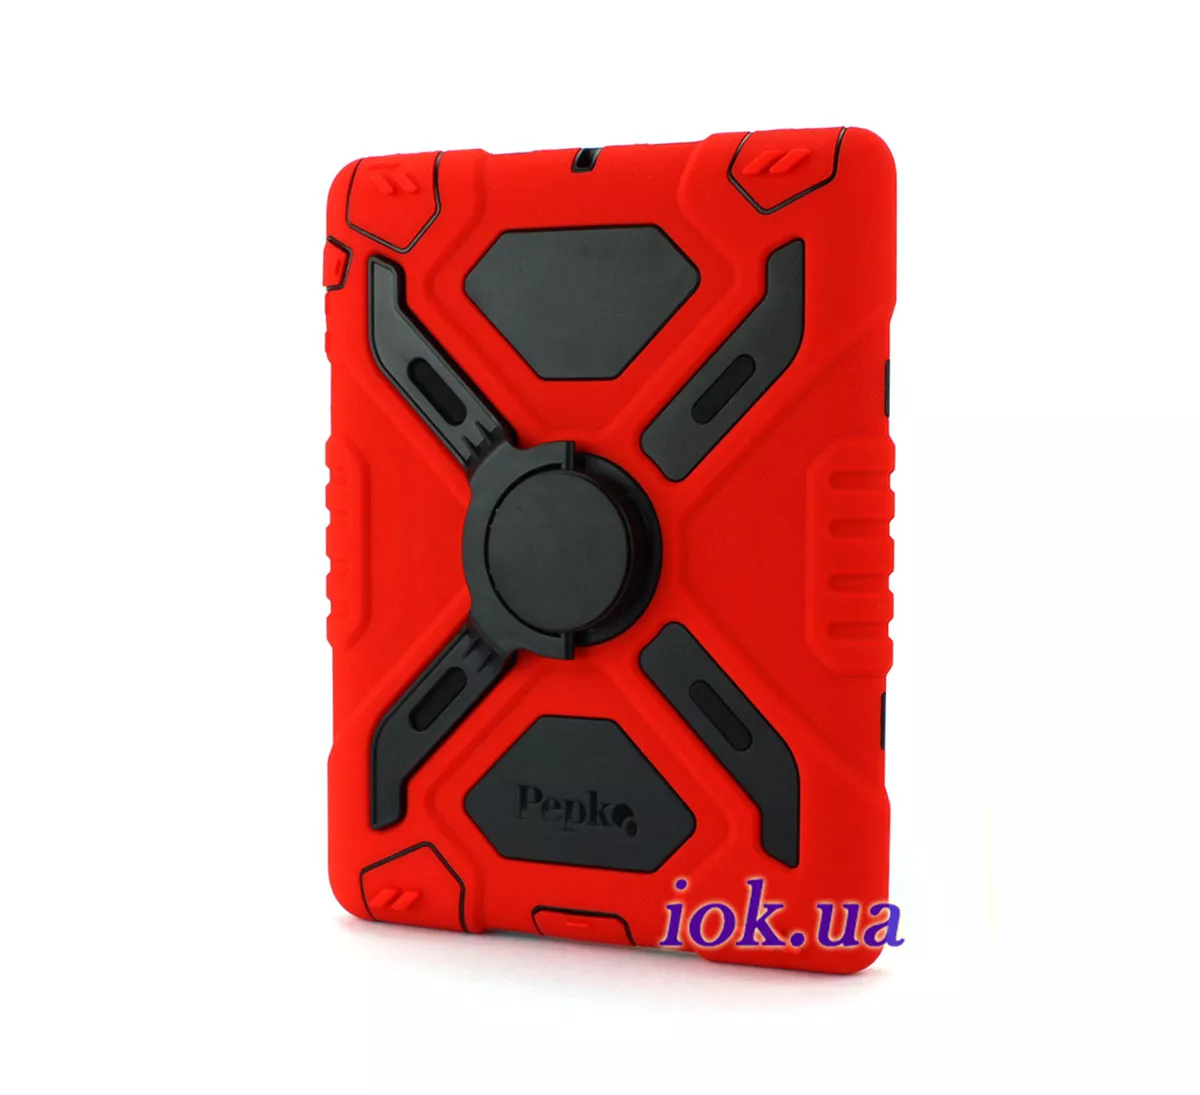 Бронированный резиновый чехол Pepkoo для iPad 2/3/4 - красный